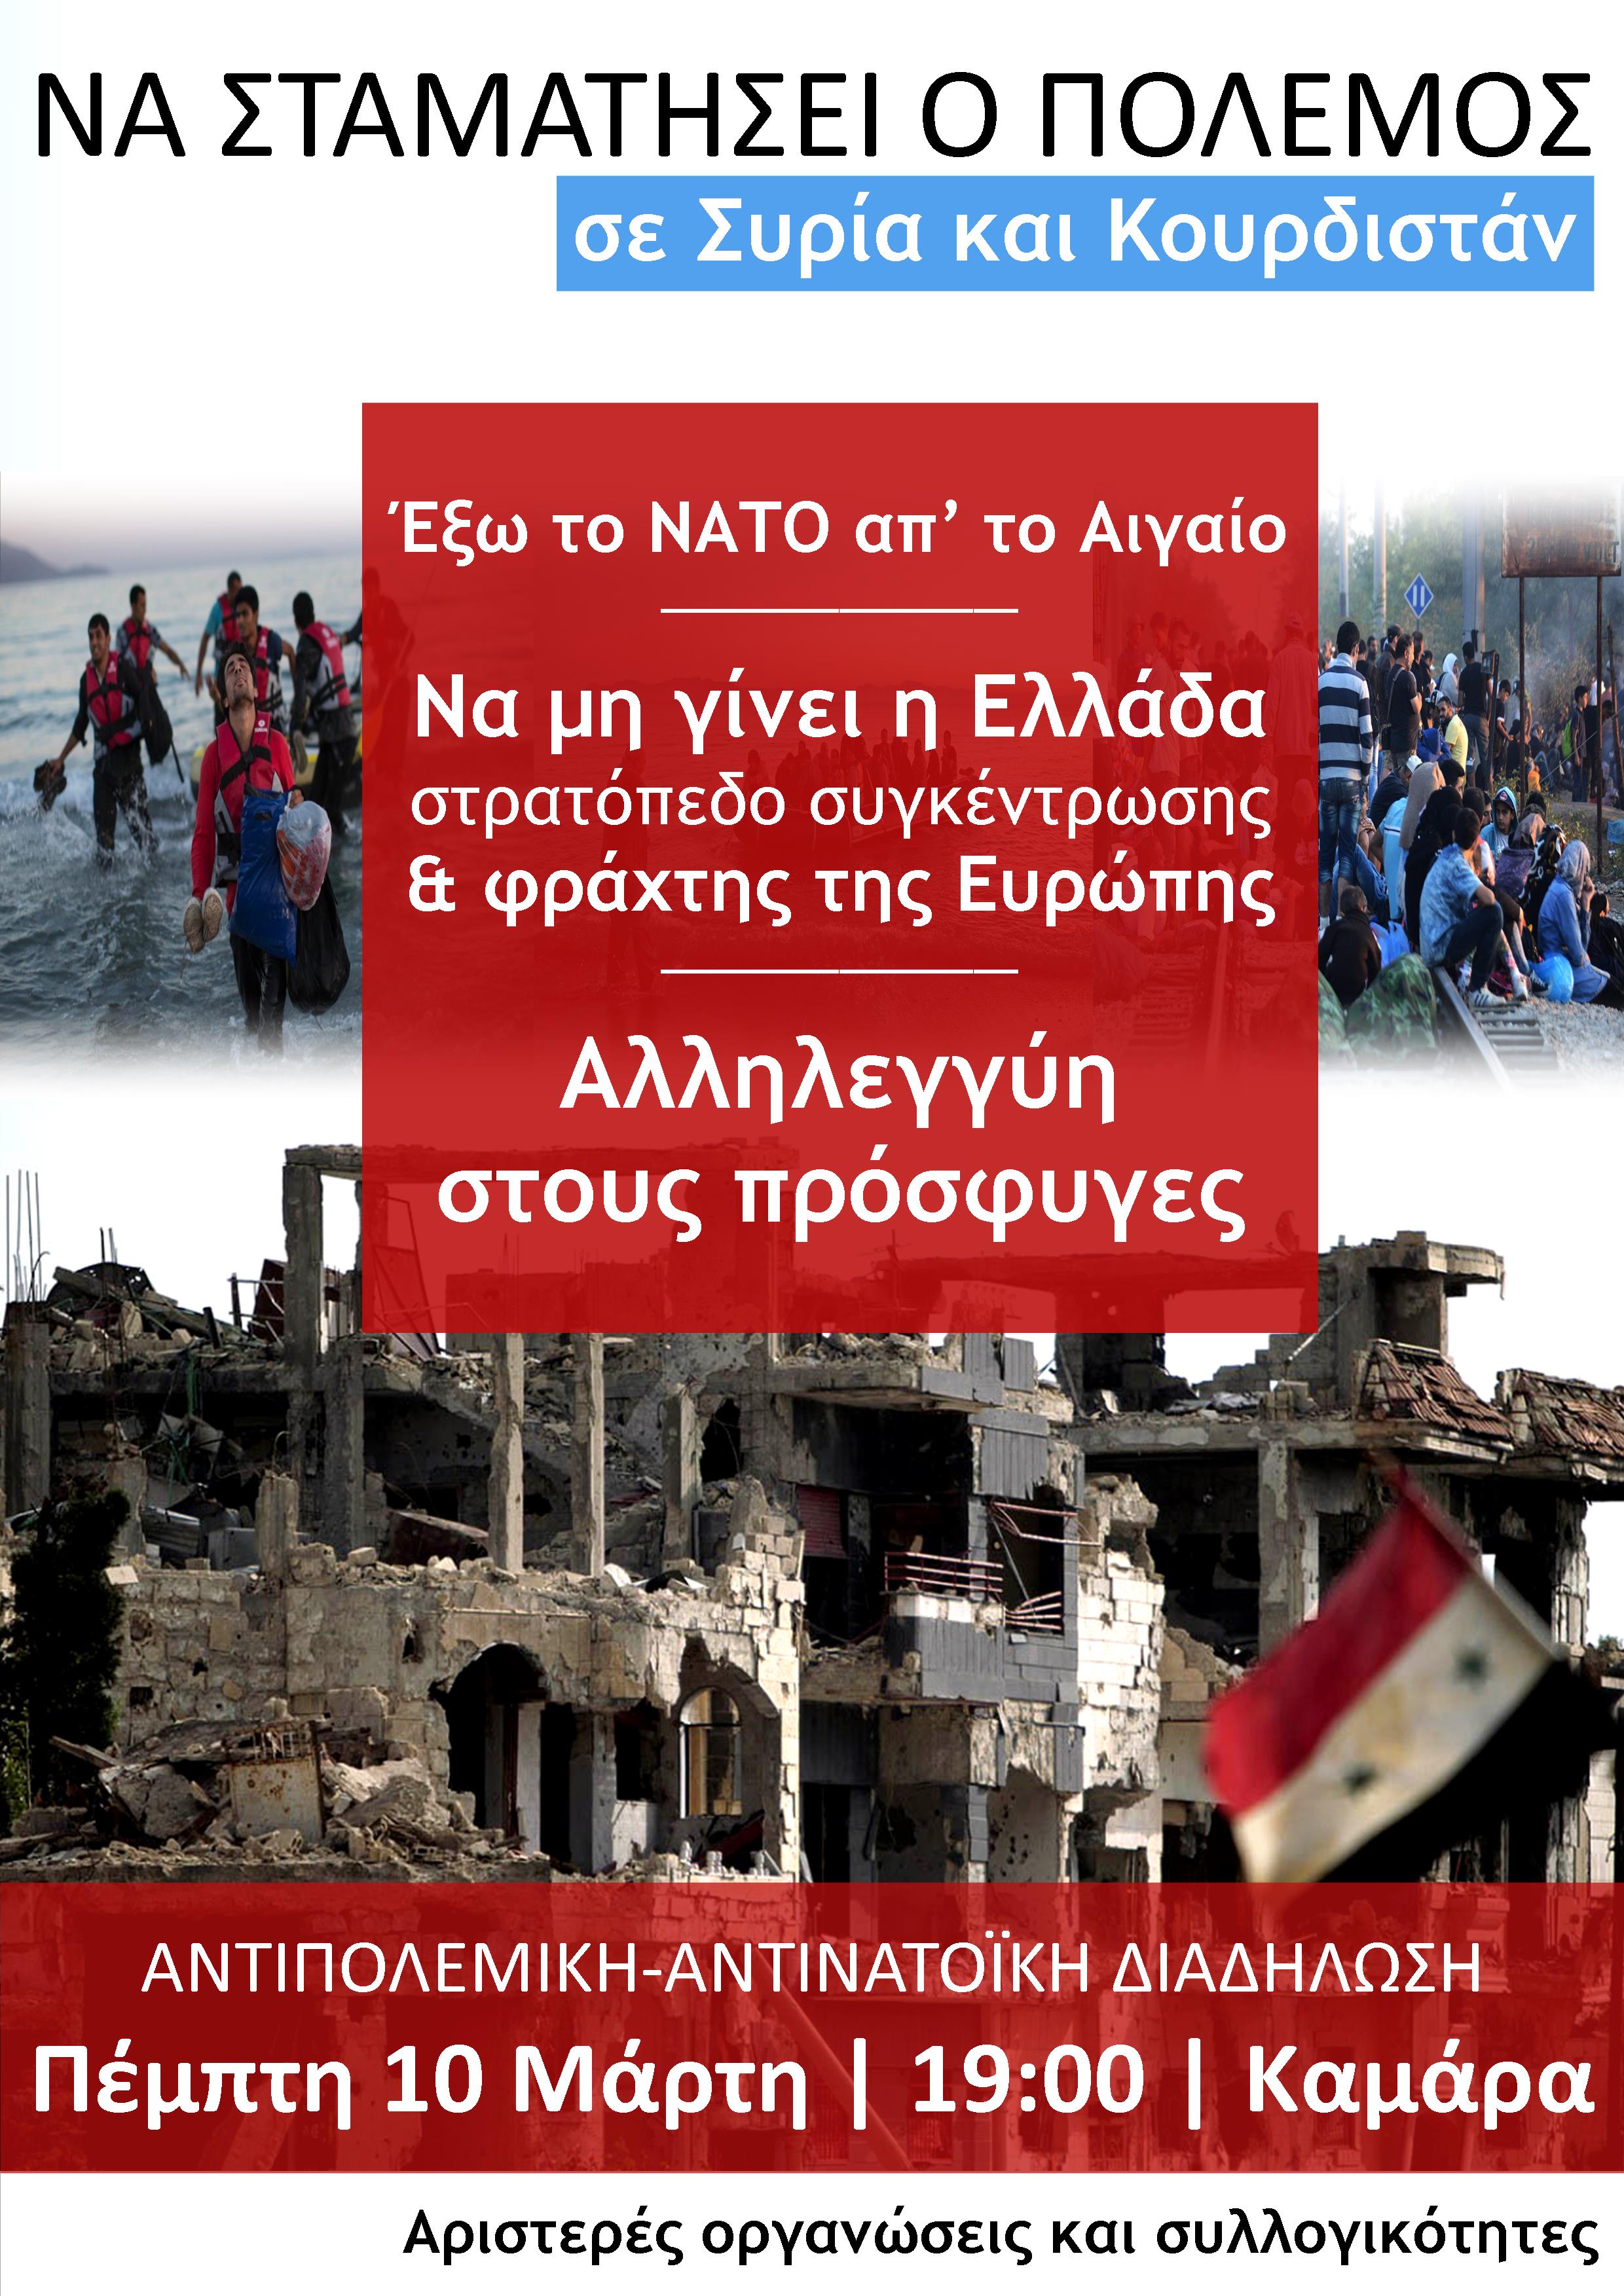 Αντιπολεμική – Αντινατοική κινητοποίηση την Πέμπτη στη Θεσσαλονίκη